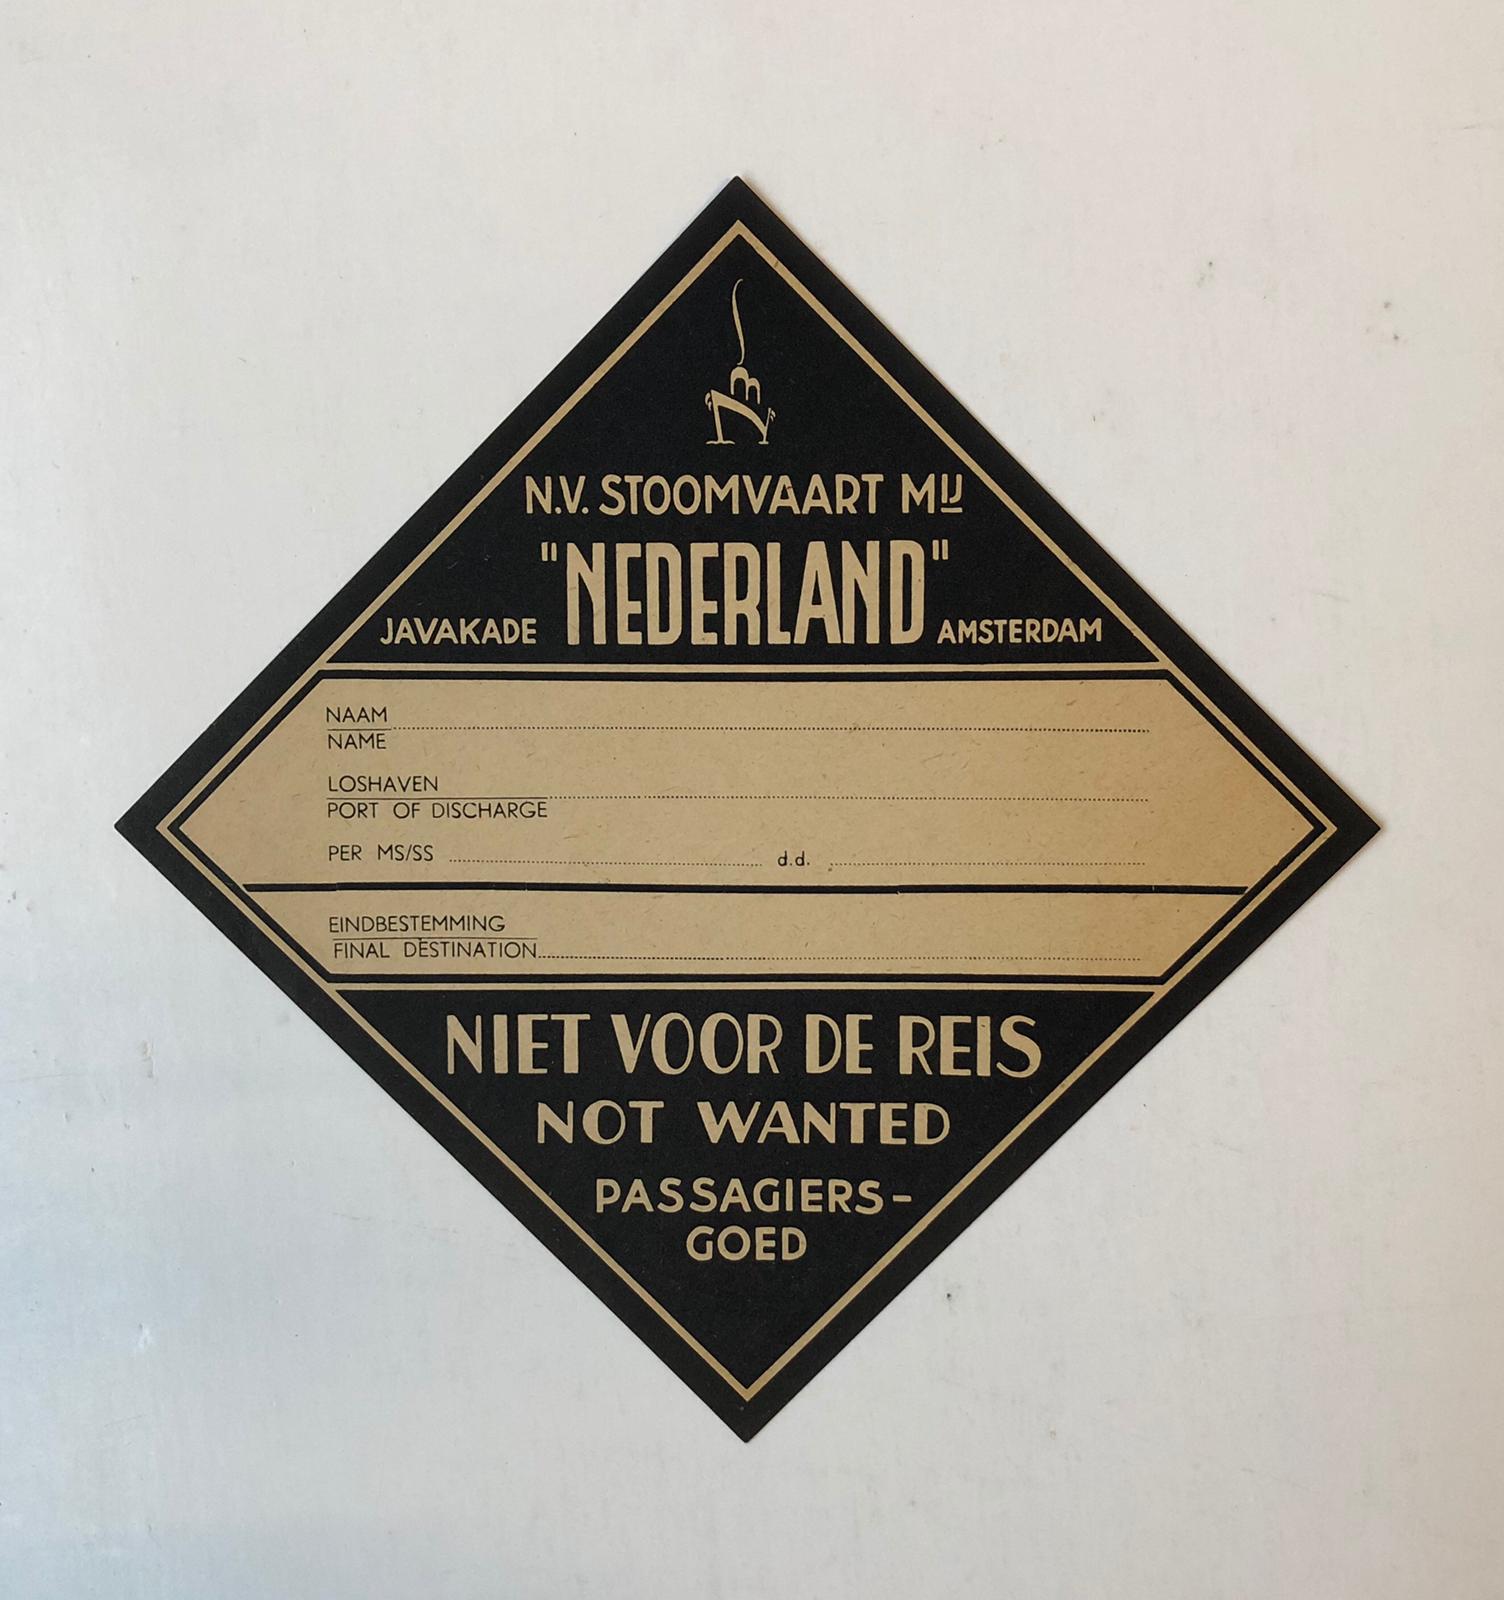  - REIZEN Label van de N.V. Stoomvaart Mij Nederland ter bevestiging op reiskoffers, ca 1930.